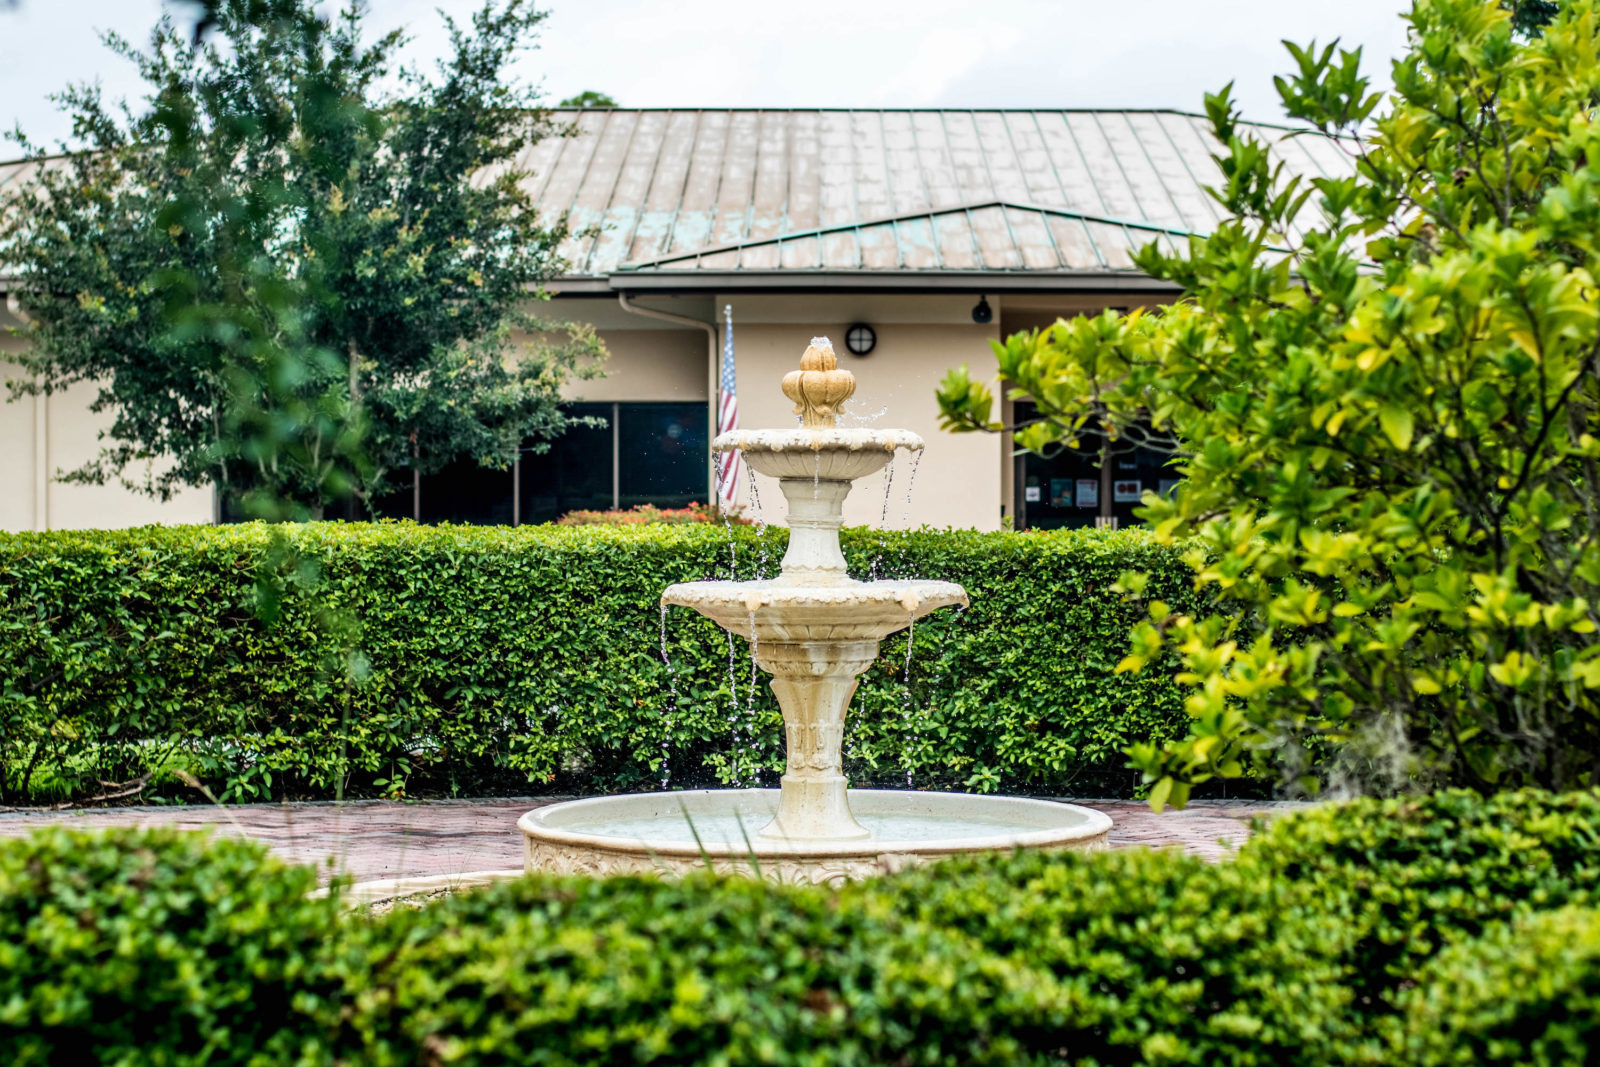 Fountain in the garden of The Gardens at DePugh Nursing Center